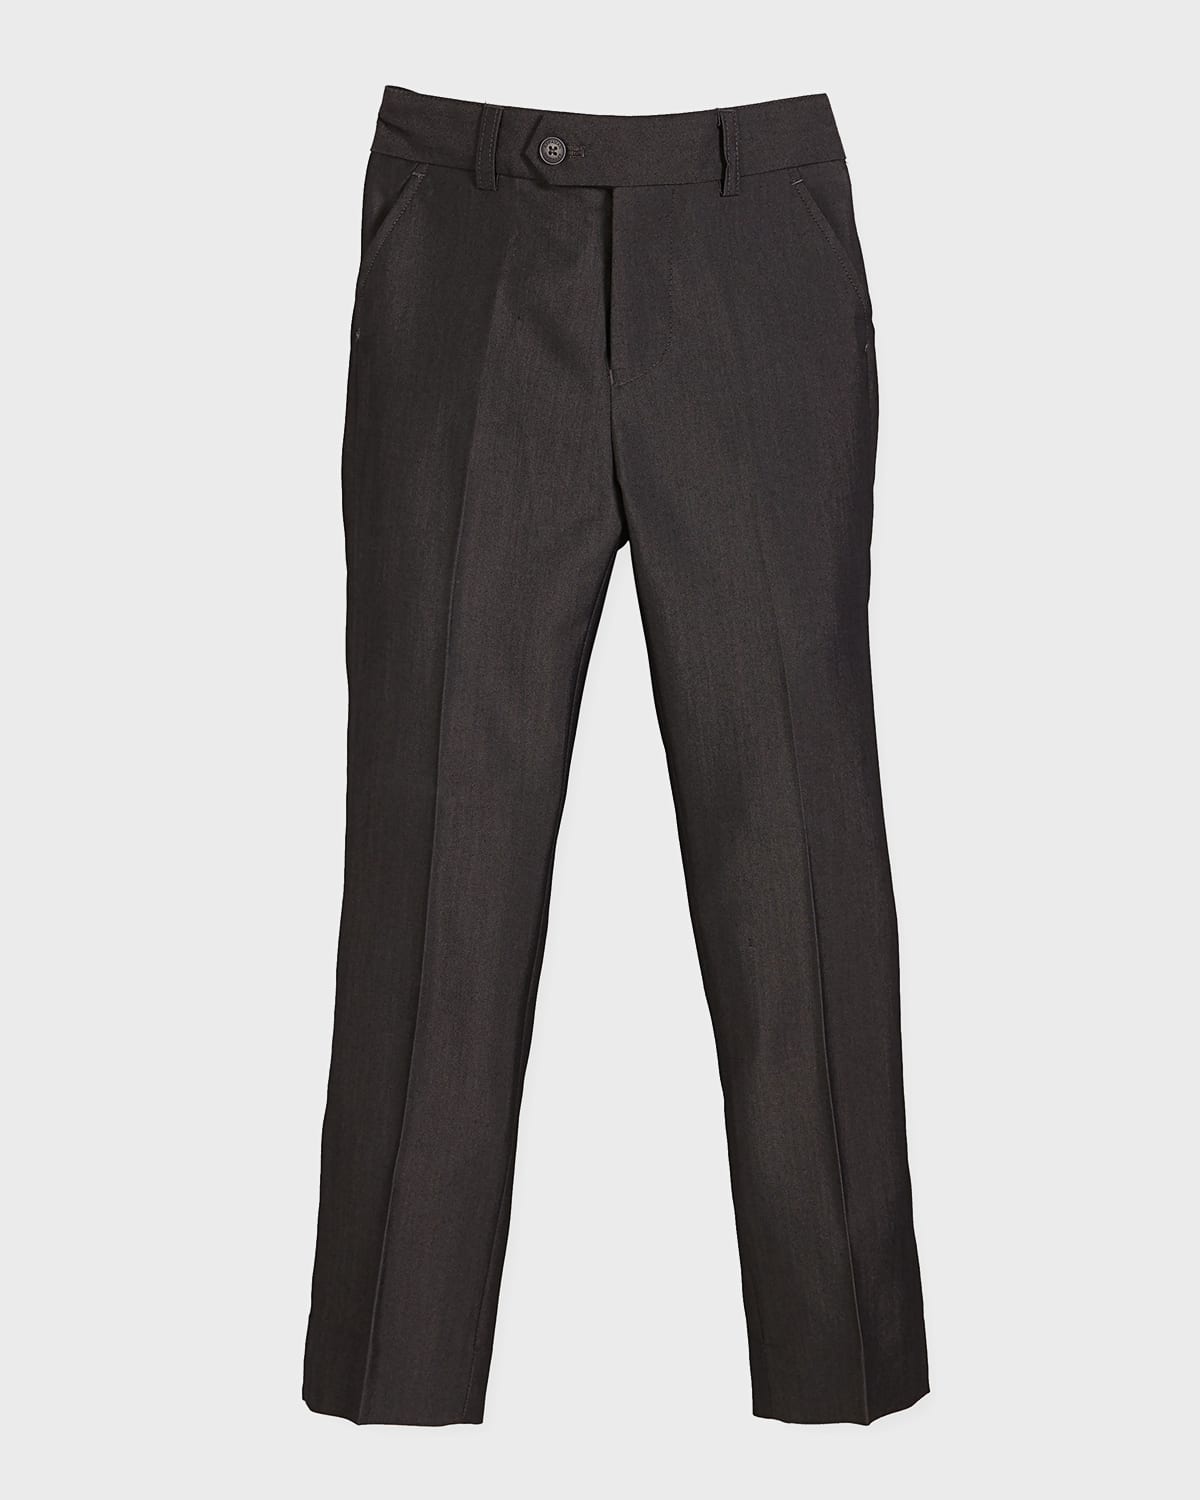 Slim Suit Pants, Charcoal, Size 4-14